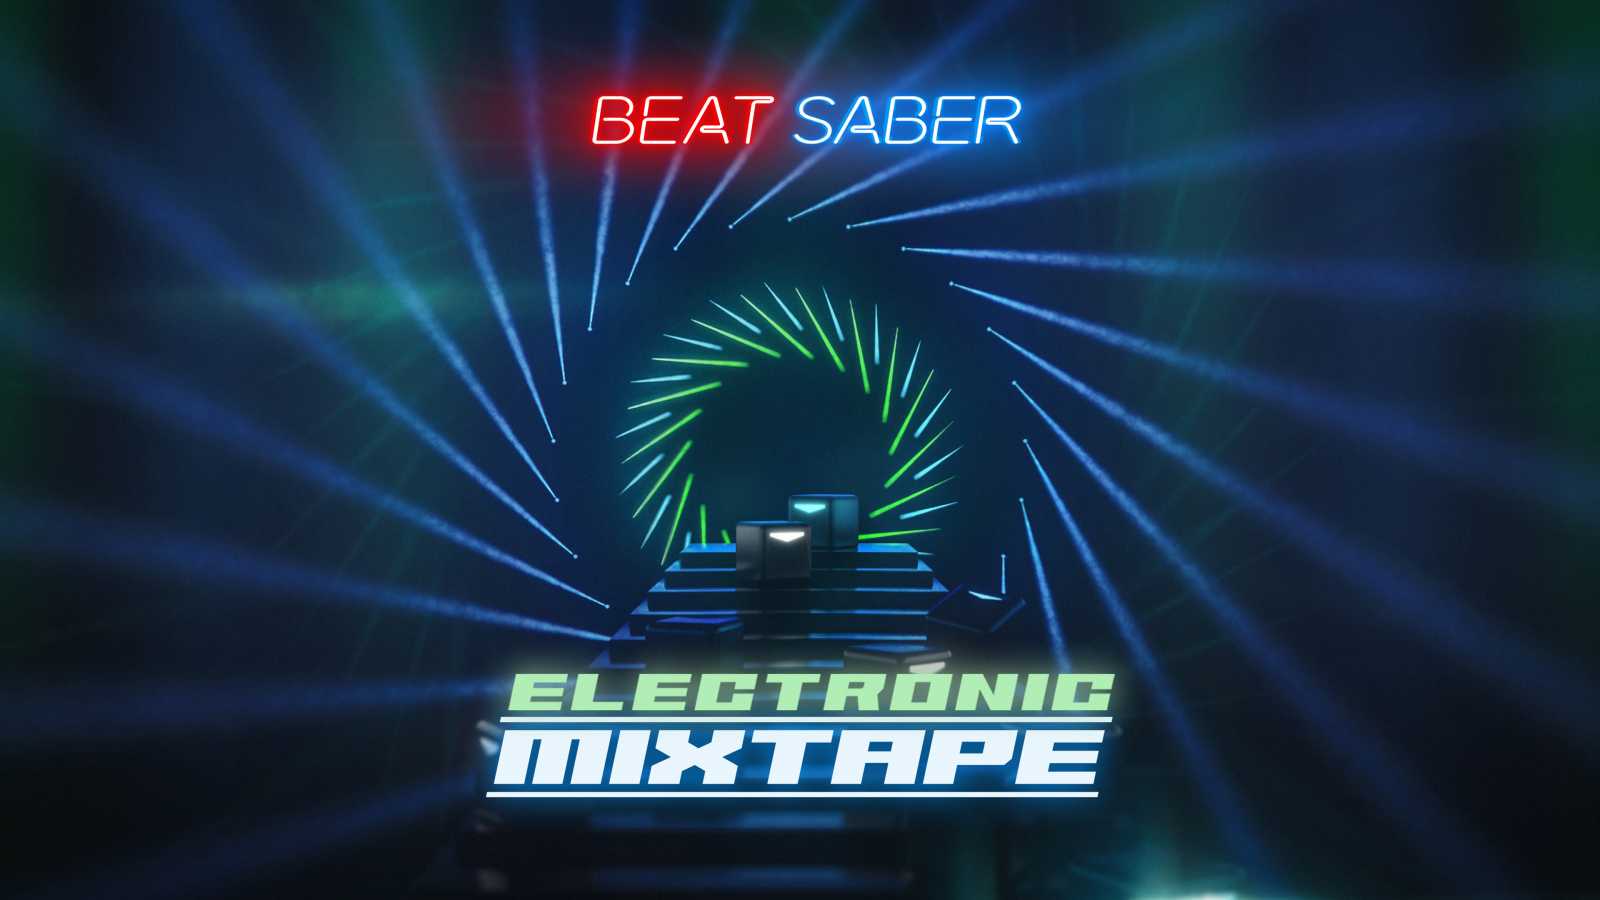 Nový balíček hudby pro Beat Saber přináší největší elektronické hity včetně Pendulum, Darude nebo Fatboy Slim